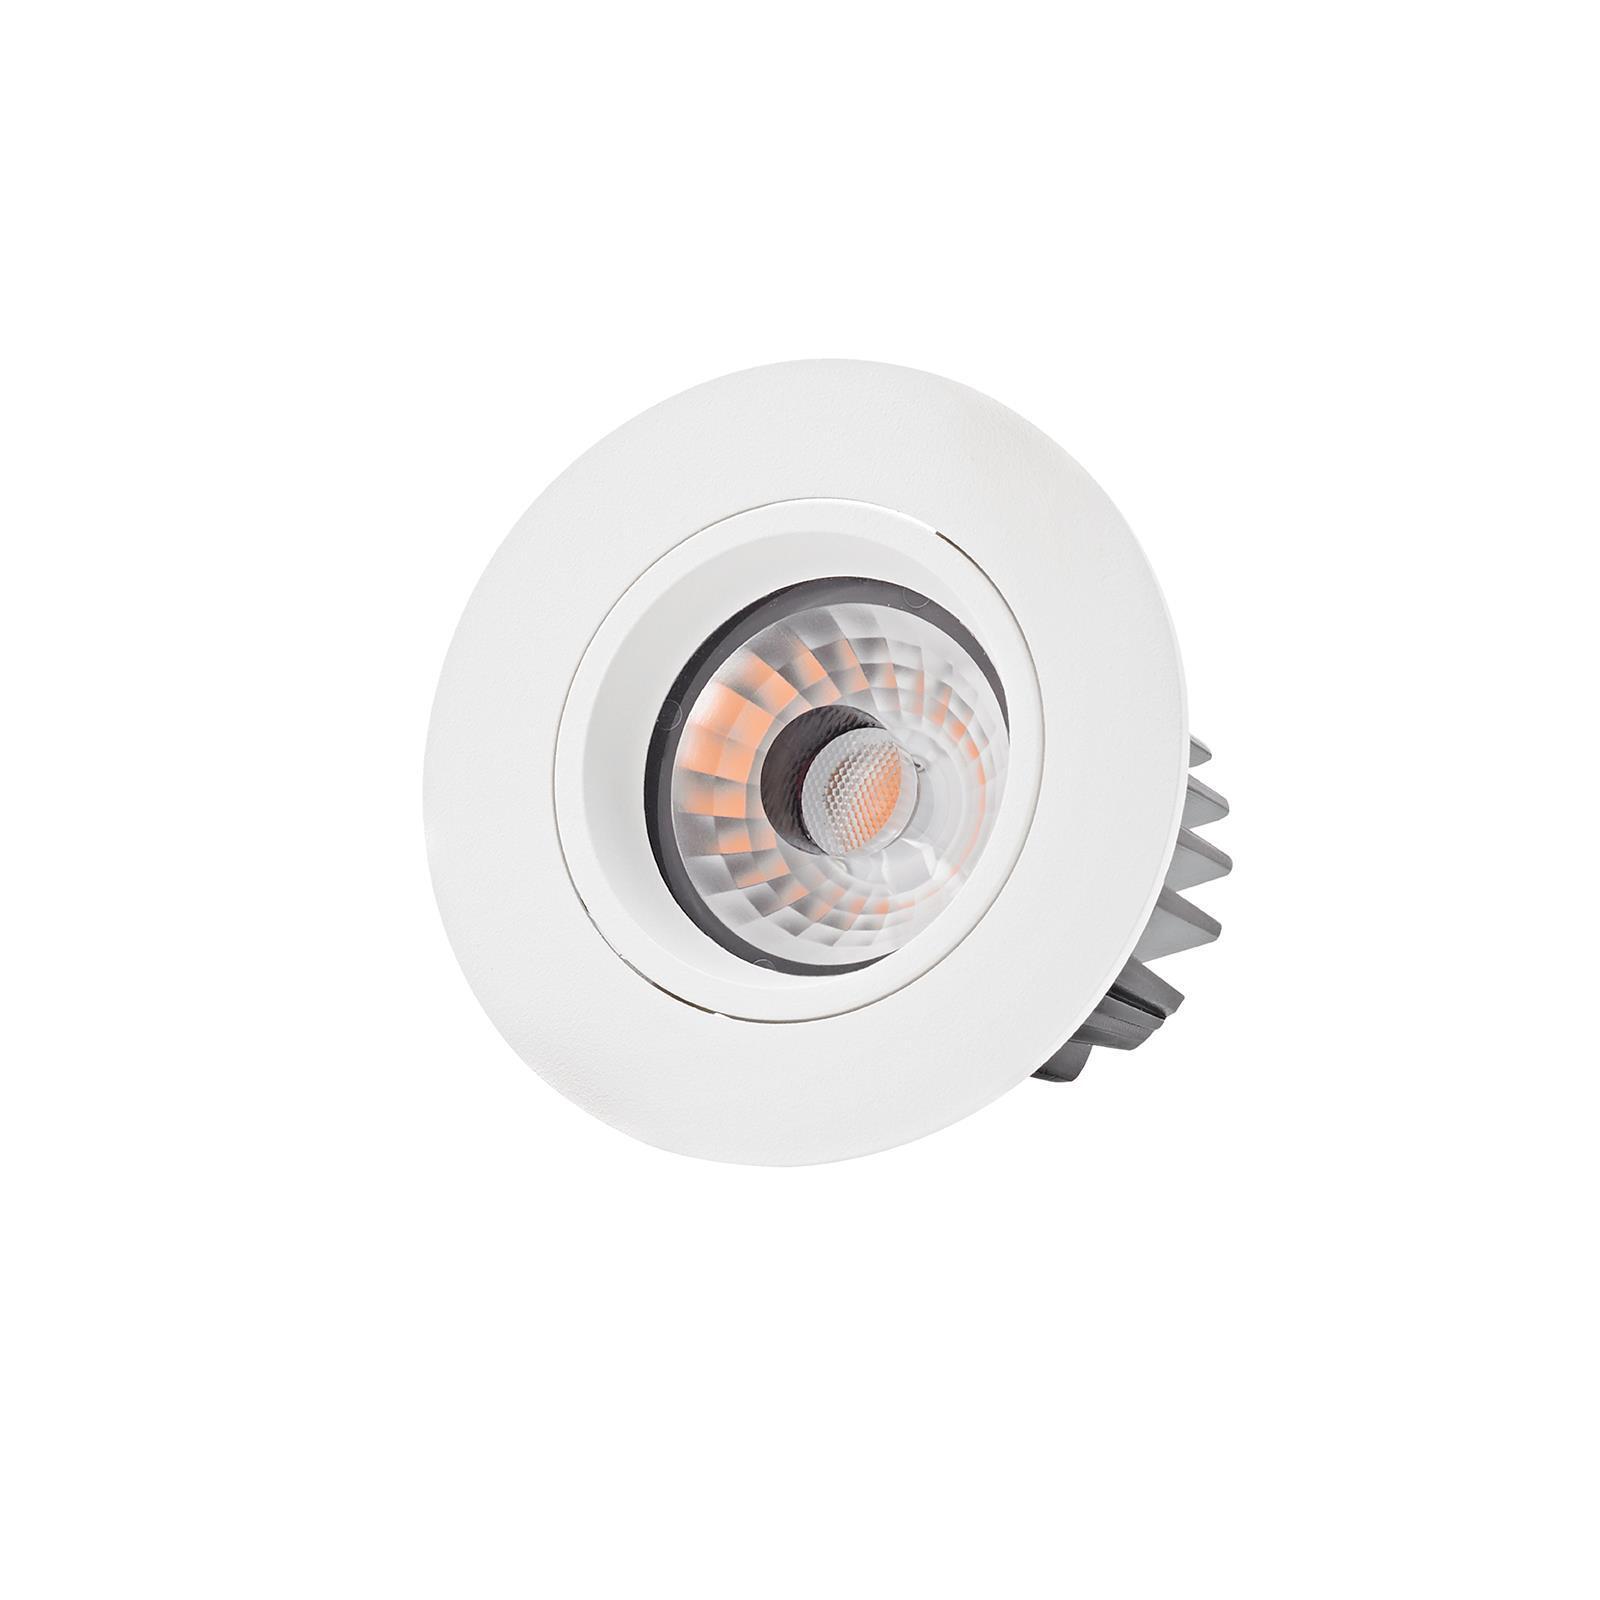 LED Einbaustrahler Argent weiß rund 9W 2700K warmweiß 36° 230V dimmbar  CRI>93 - Lampen & Leuchten Onlineshop